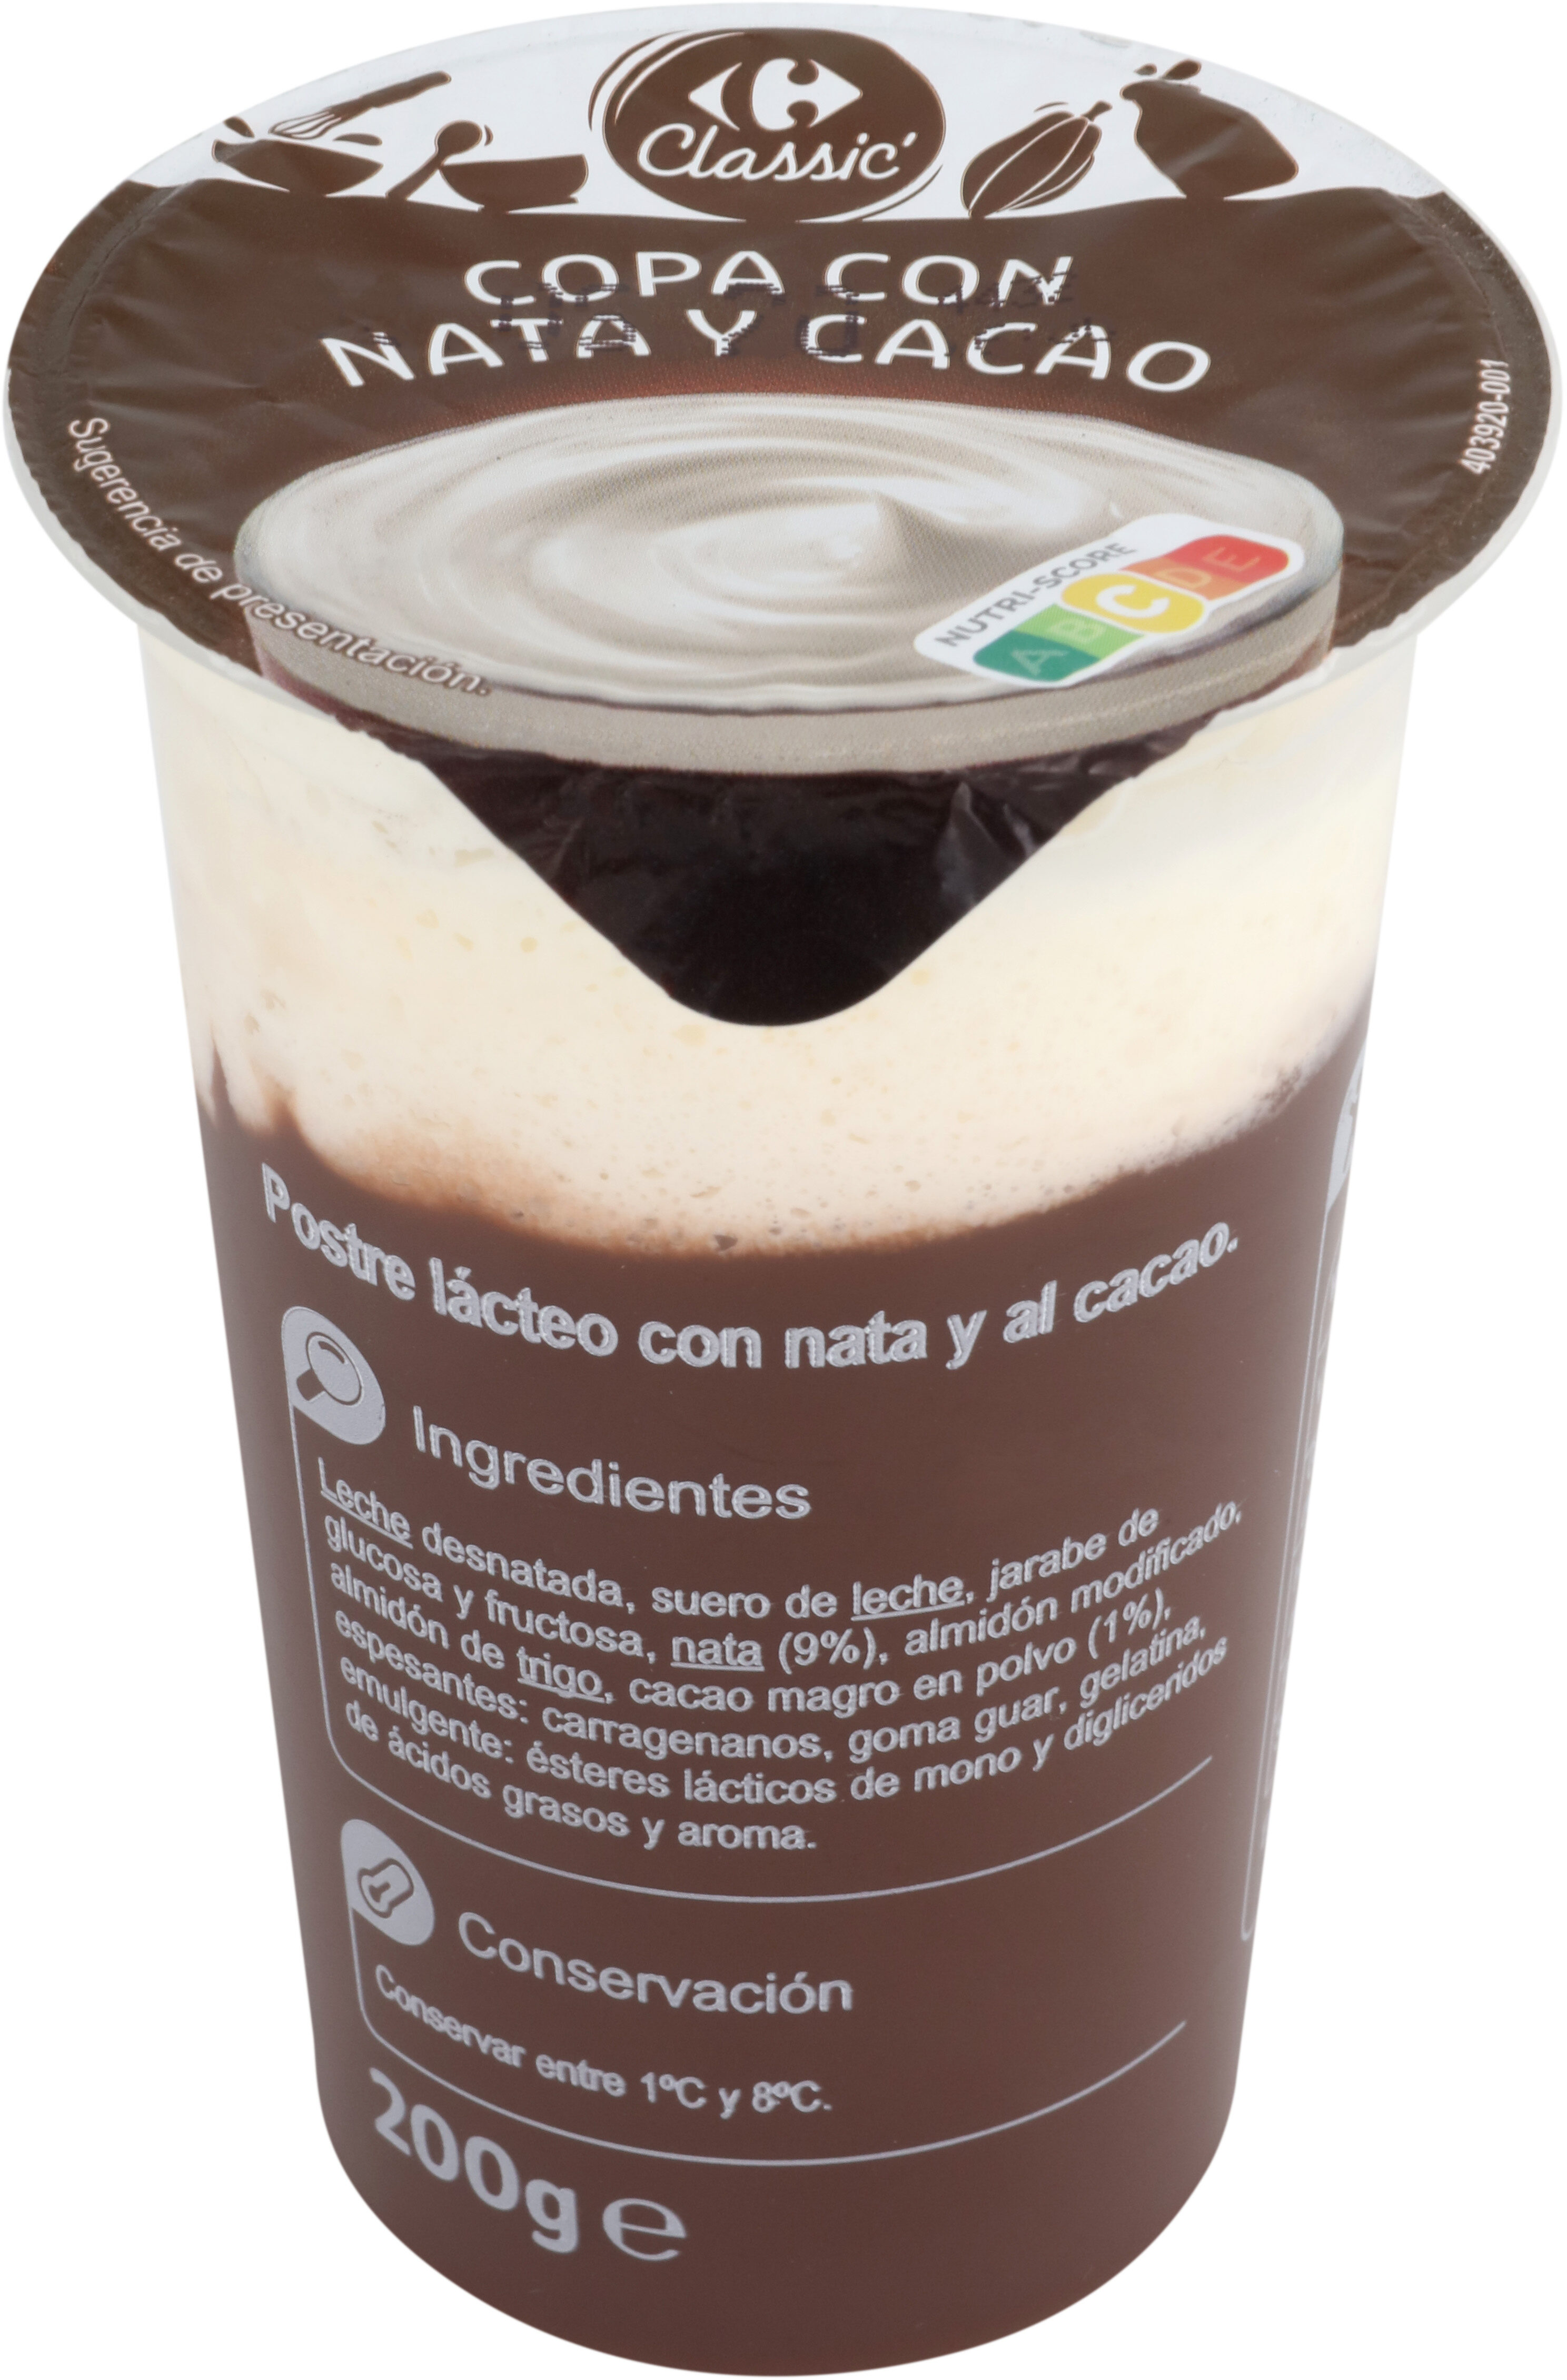 Copa con nata y cacao - Producto